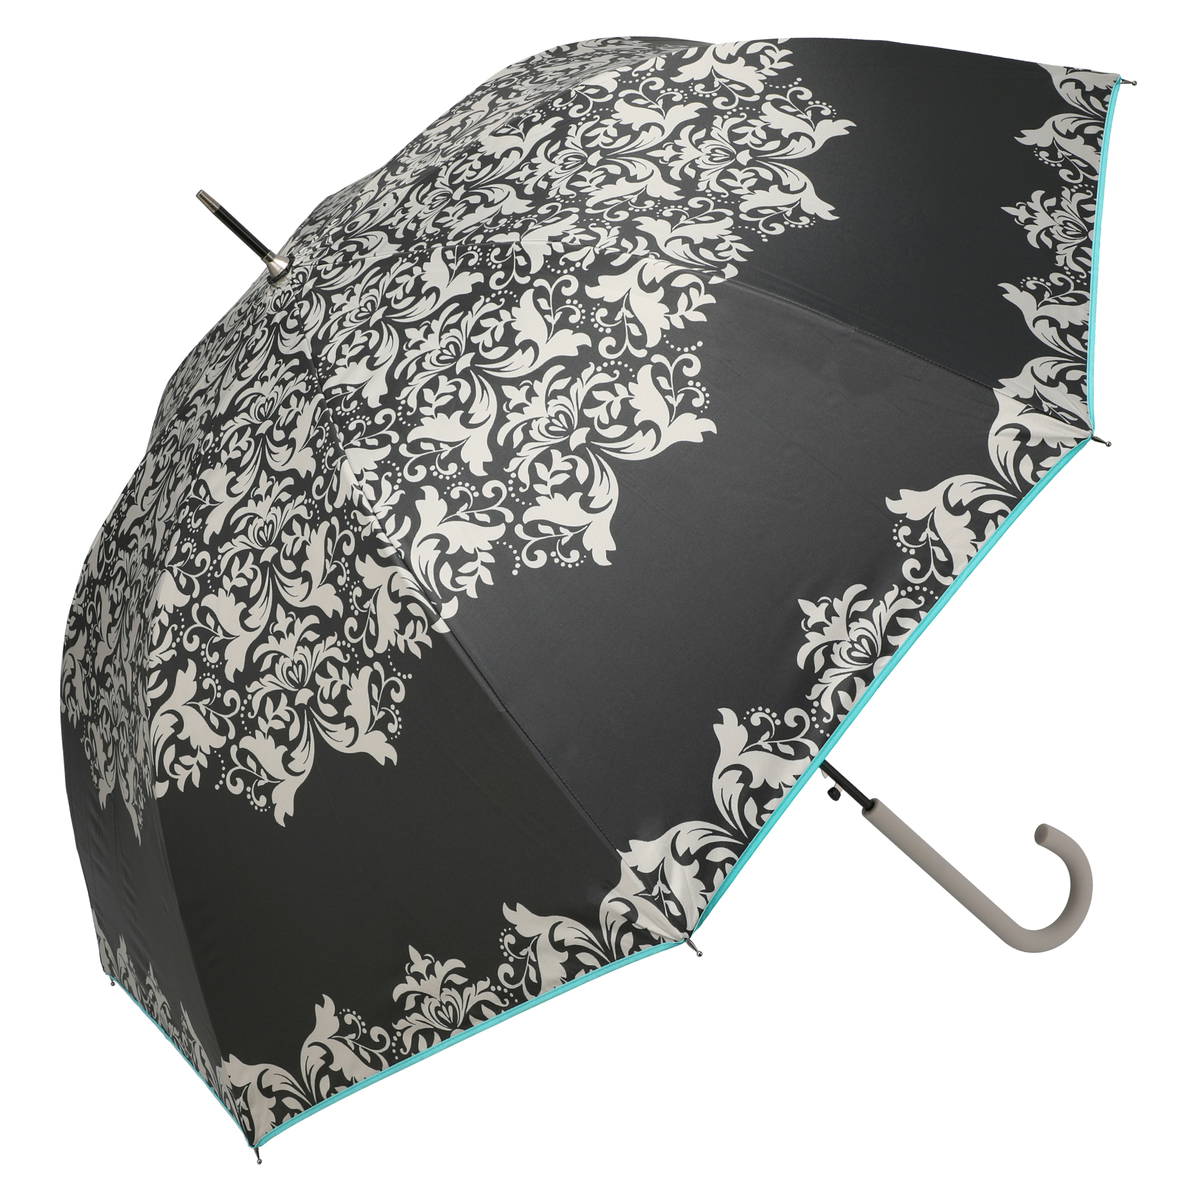  ルナジュメール UV+1級遮光+晴雨兼用 ダマスク柄長傘  ブラック